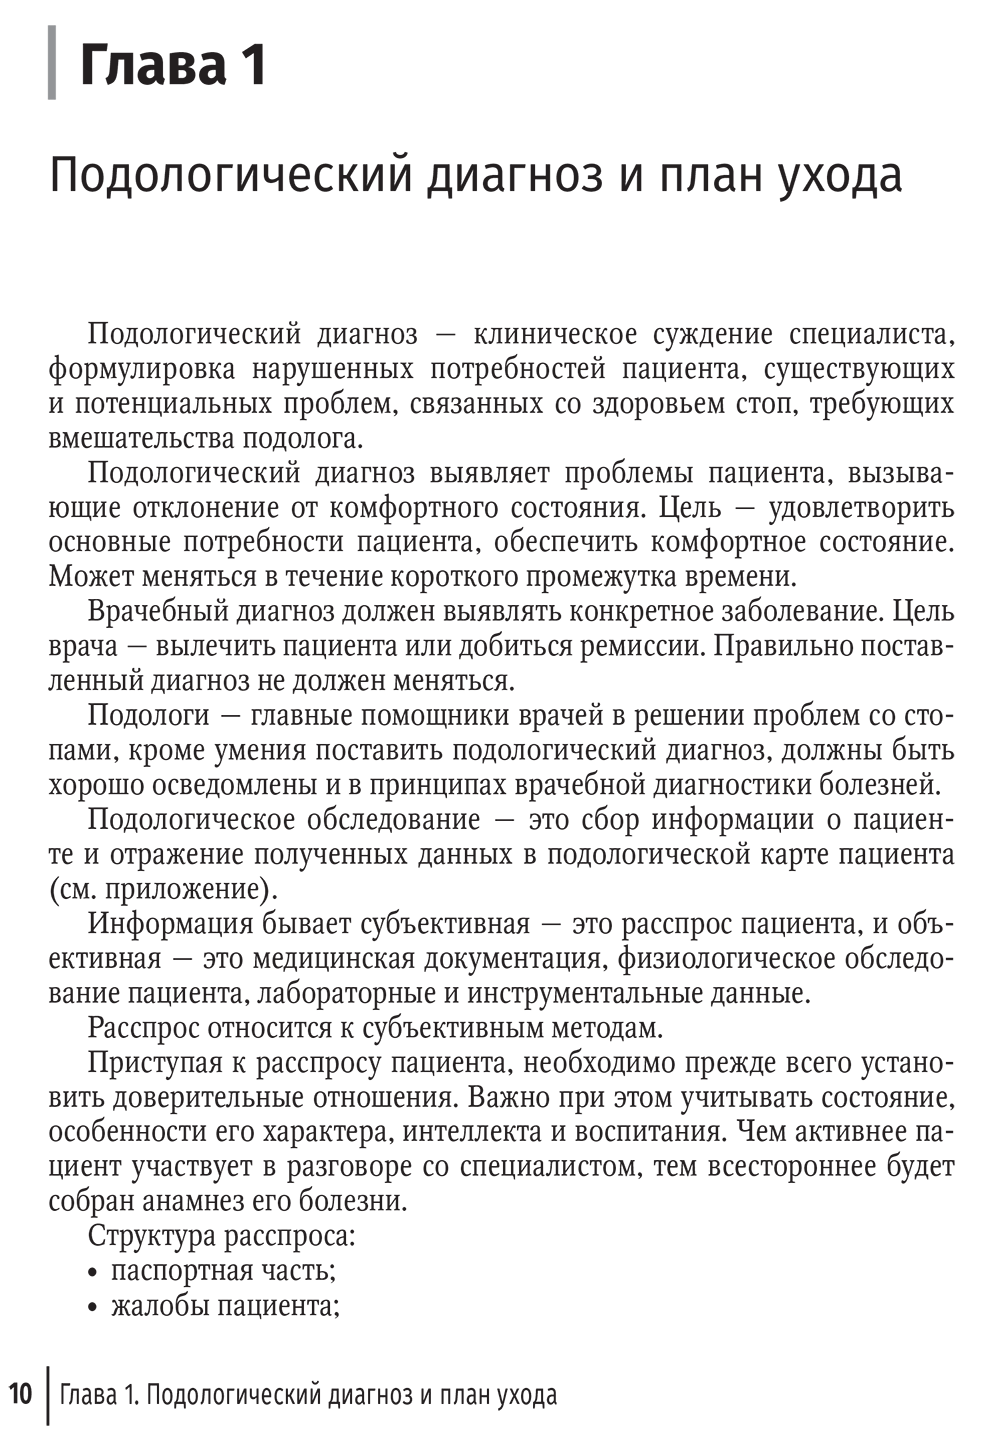 Пример страницы из книги "Подолог+. Руководство" - Дусаева А. Ф.